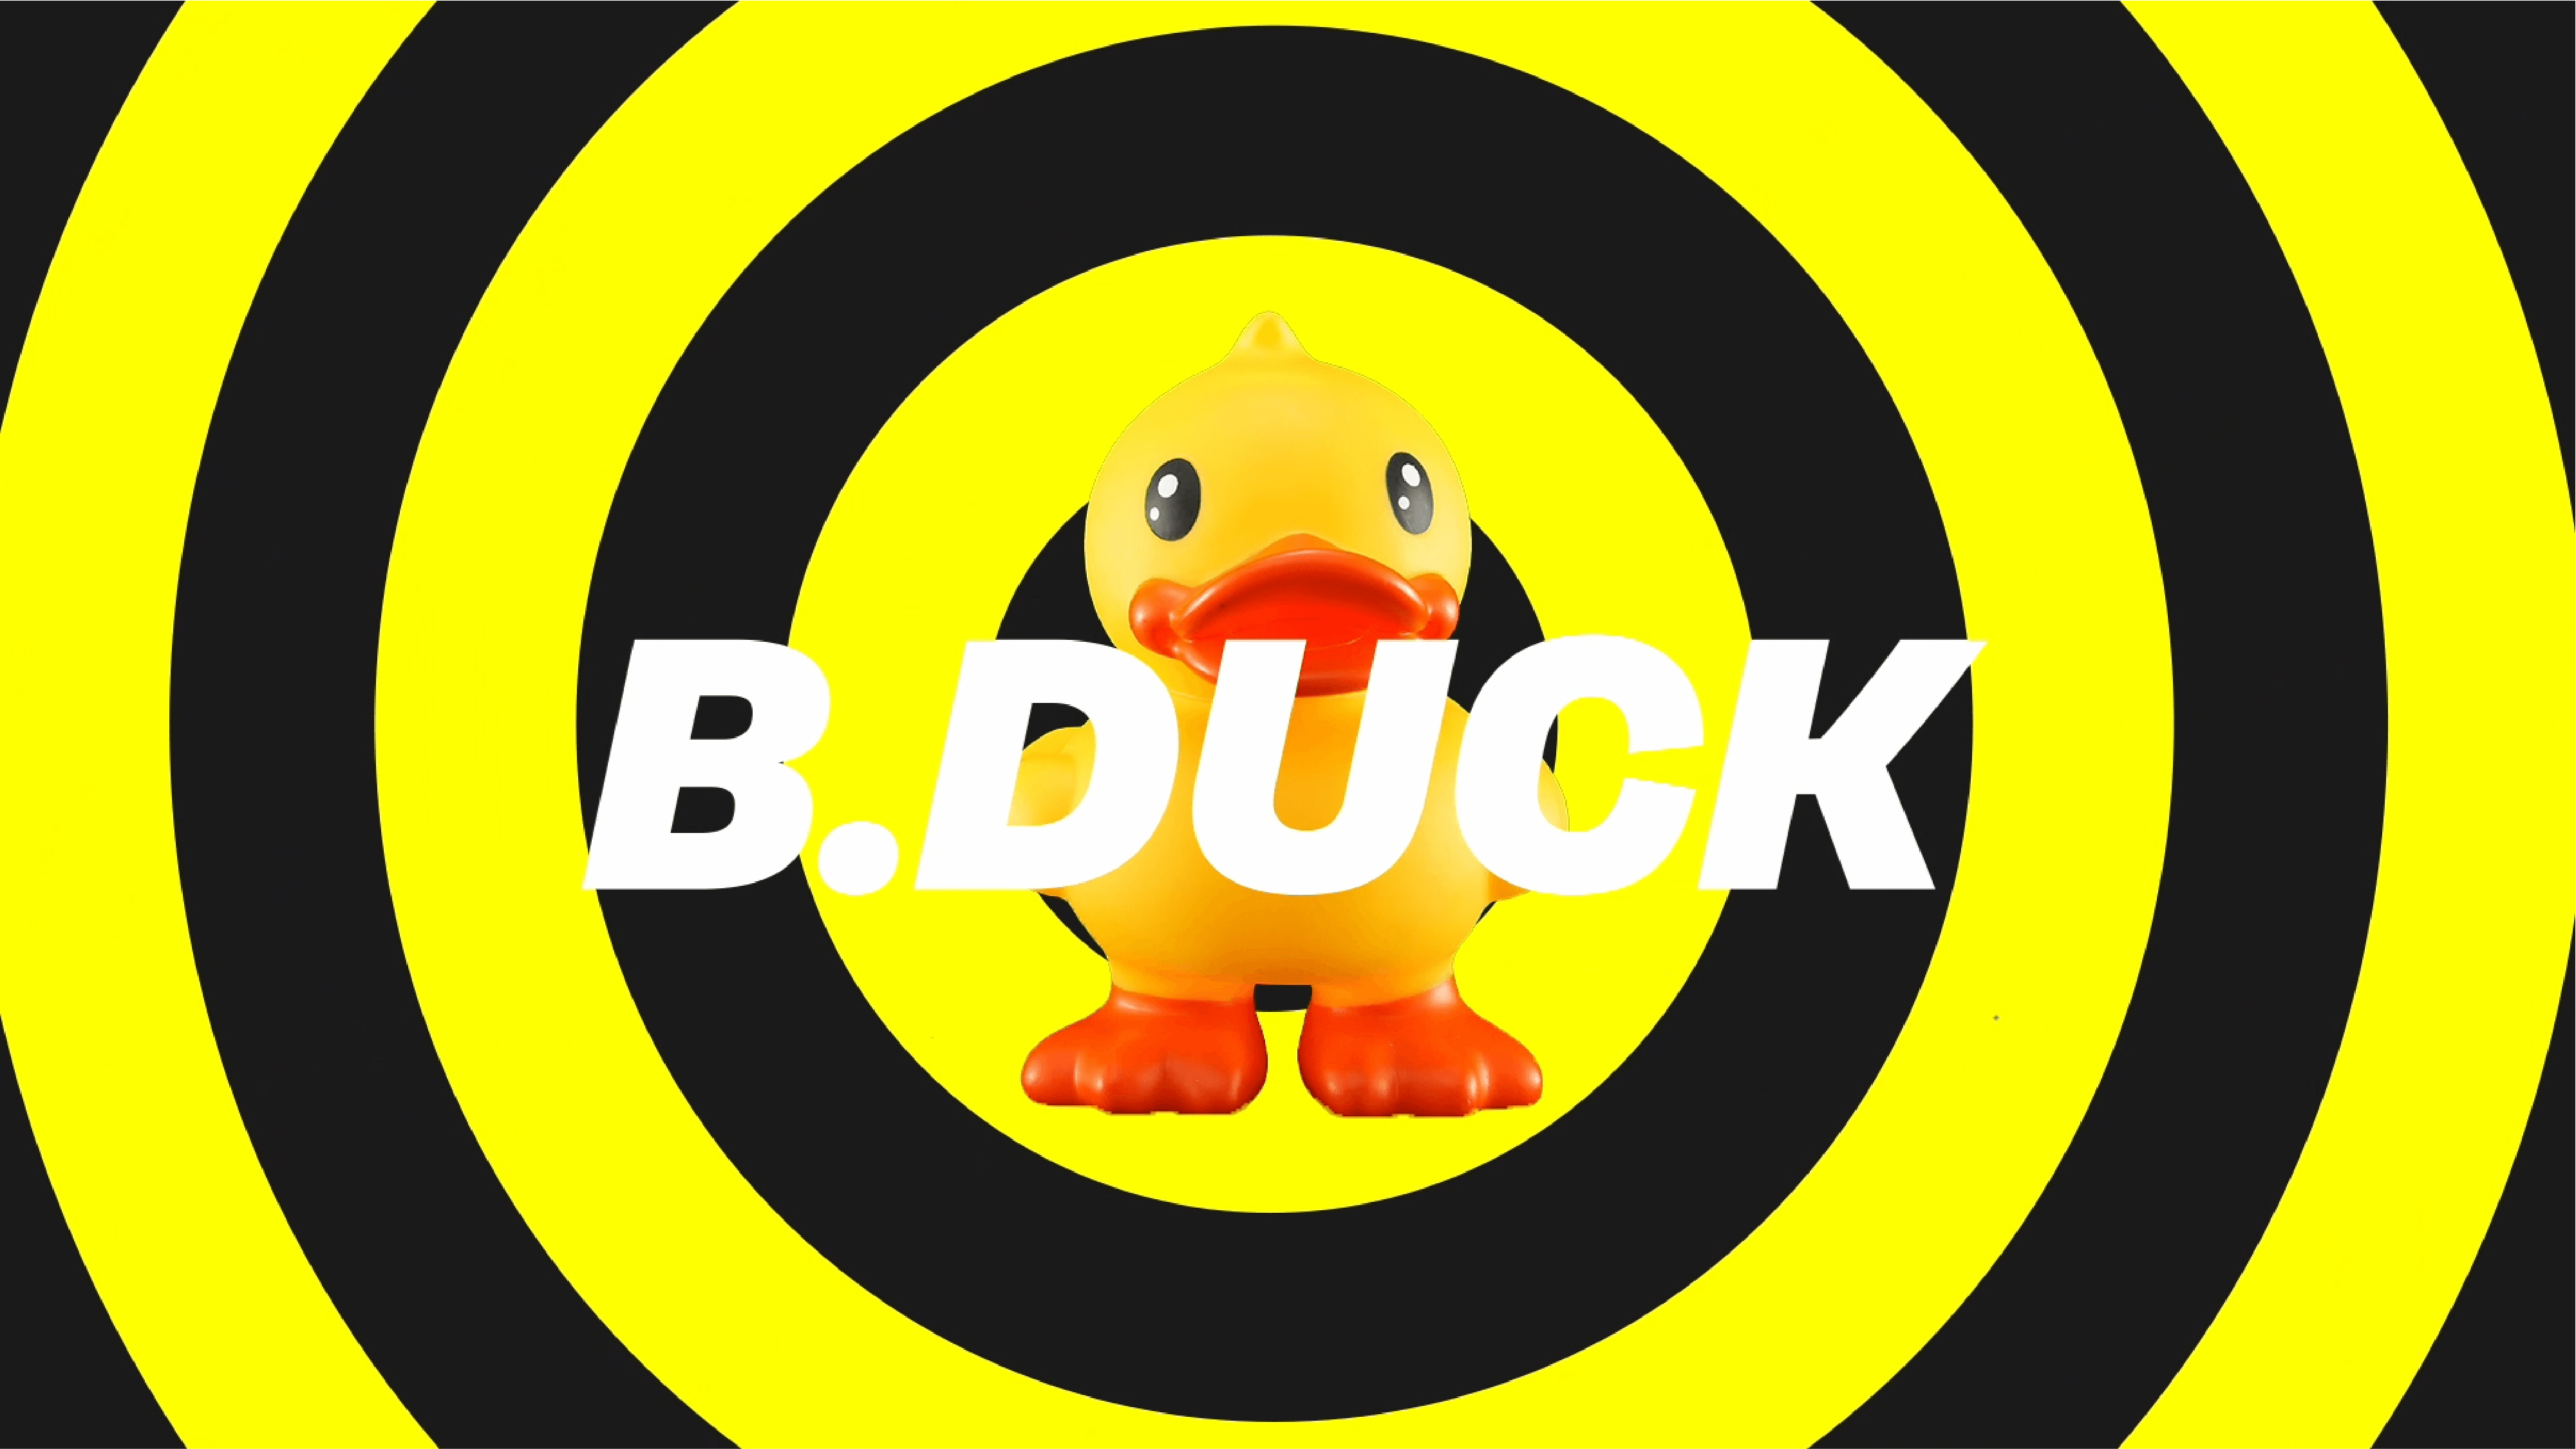 b.duck小黄鸭 壁纸图片